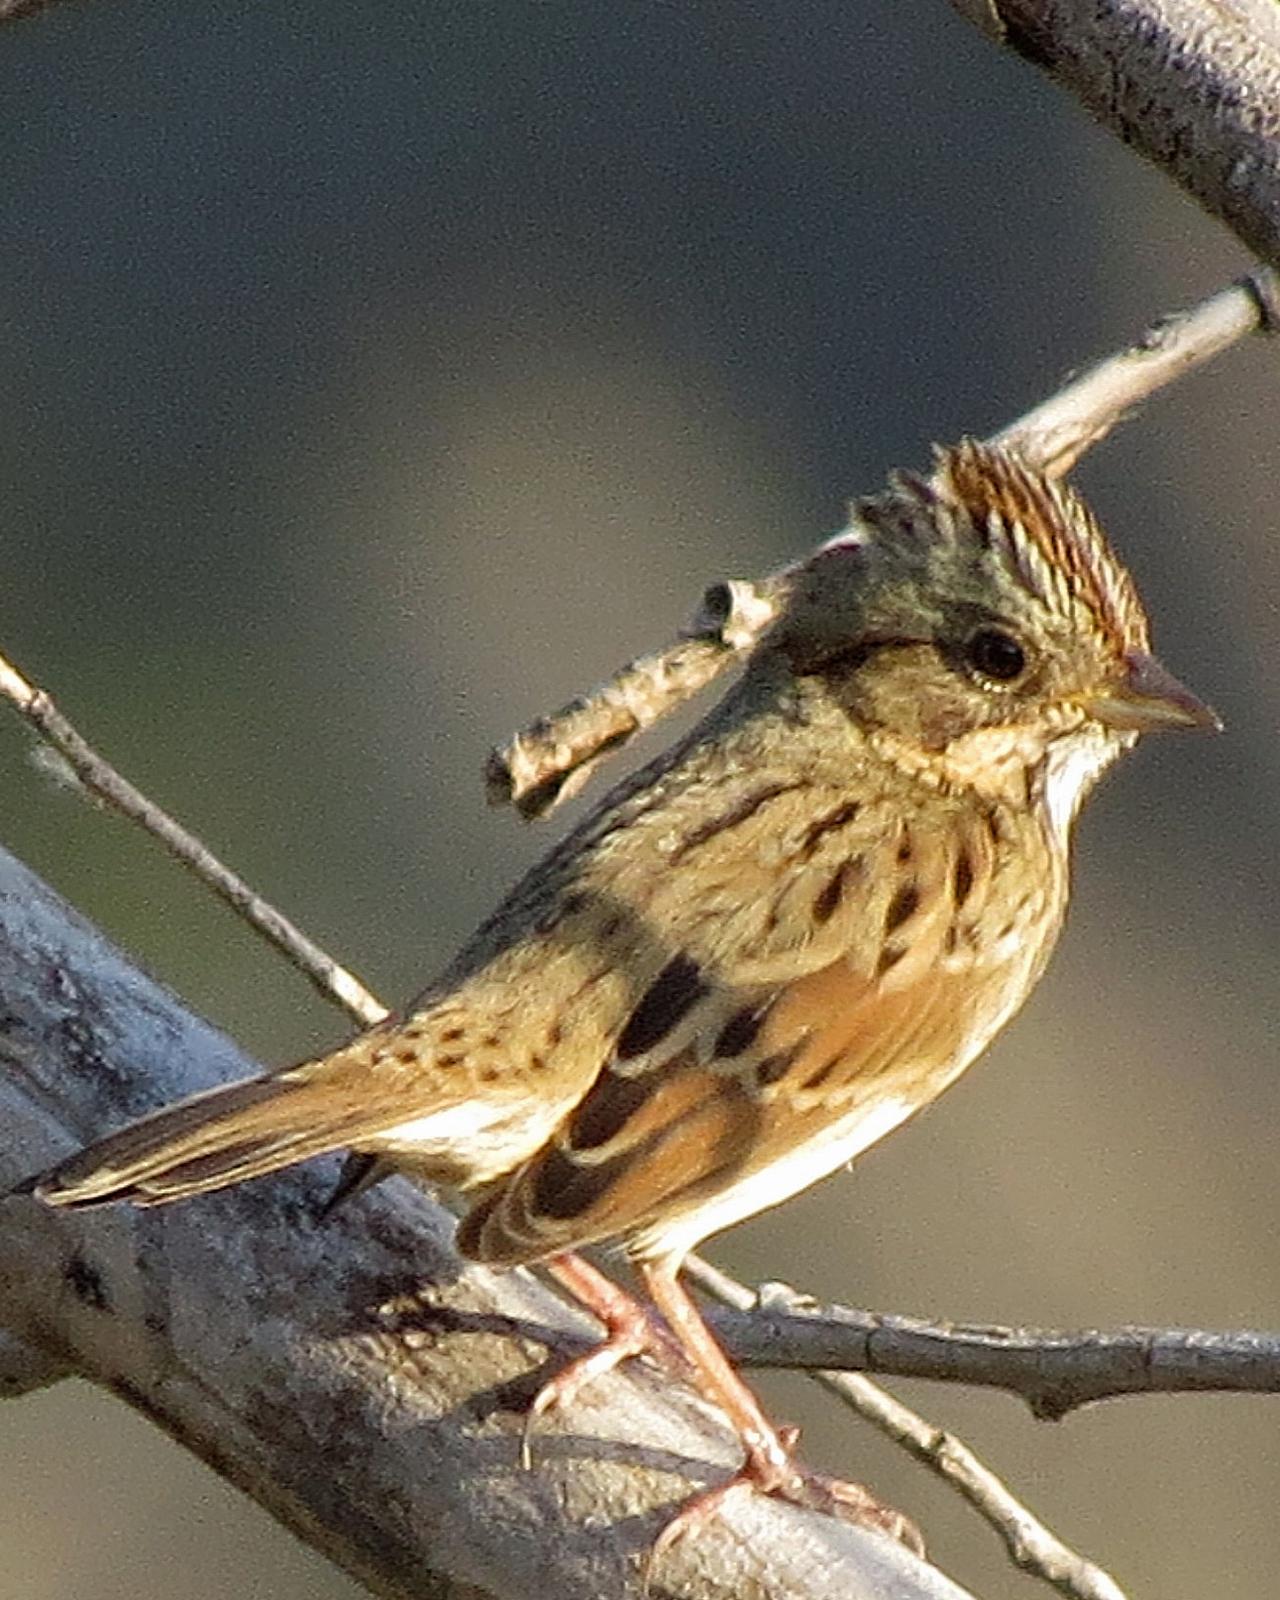 Lincoln's Sparrow Photo by Kelly Preheim